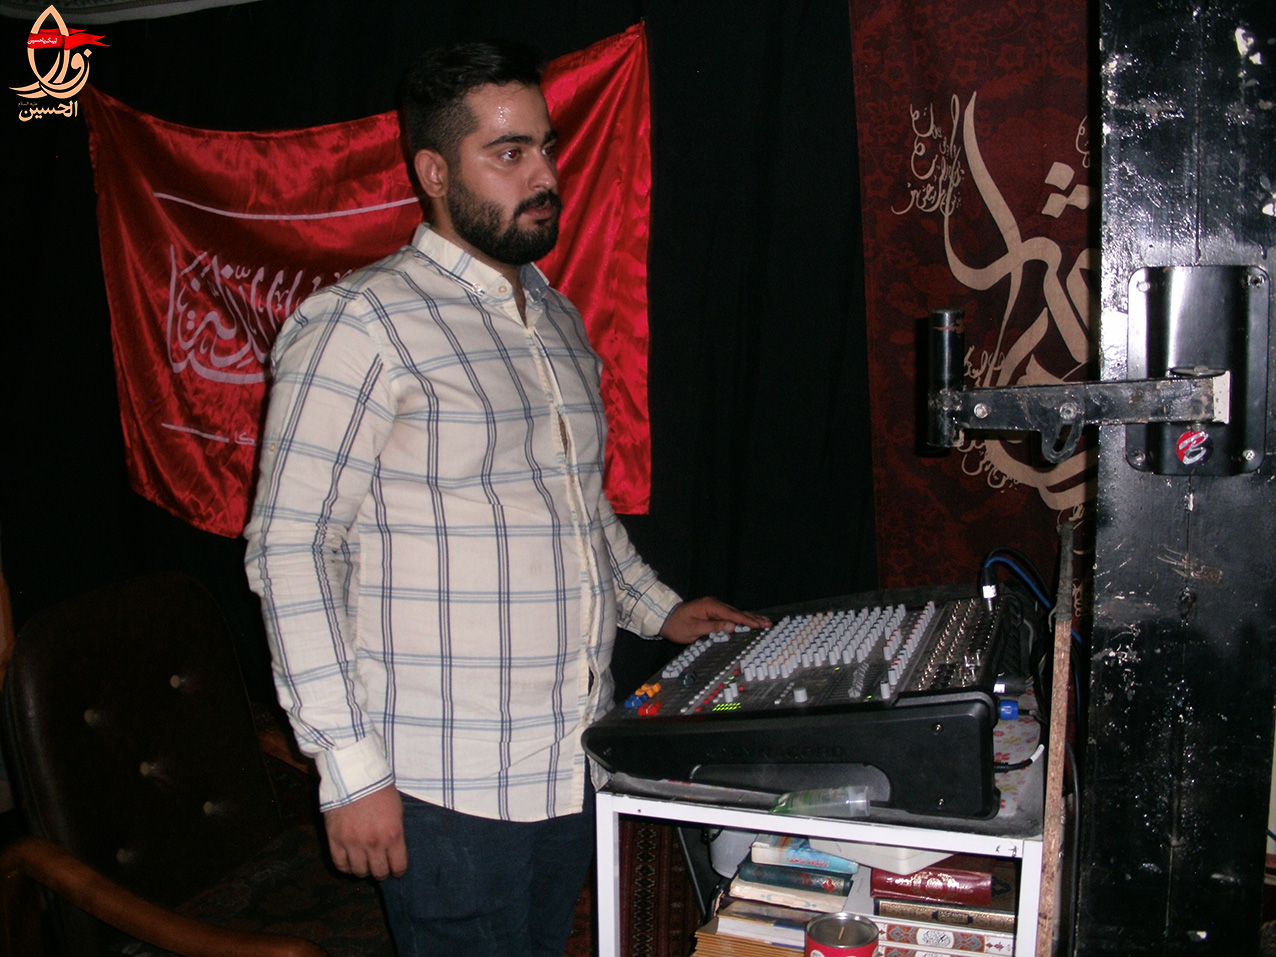 تنظیم سیستم صوتی توسط محمدحسن بهشتیان در حسینیه شهید دولت آبادی